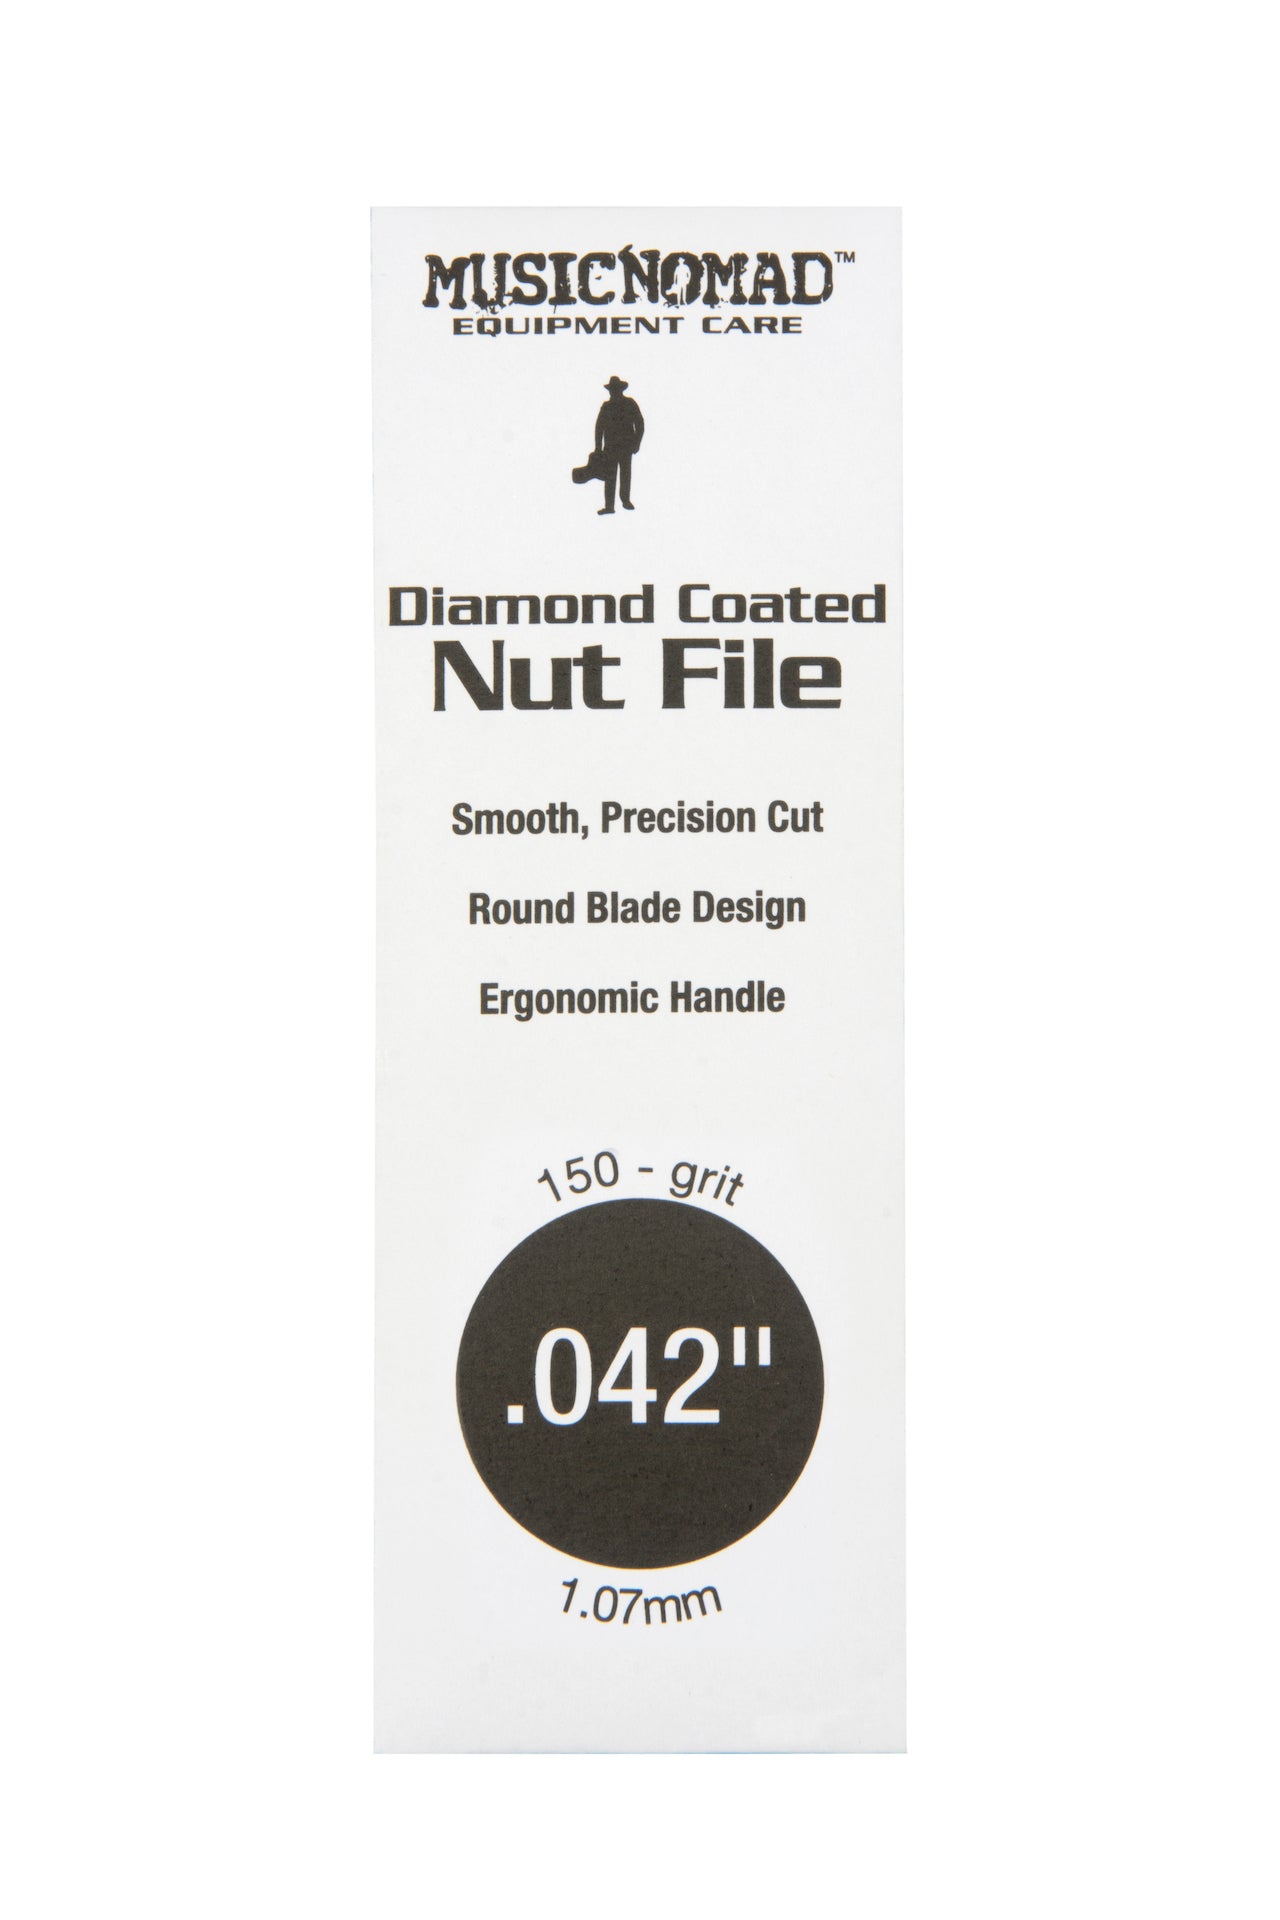 Music Nomad Diamond Coated Nut File Singles - HIENDGUITAR .042" .042" musicnomad musicnomad